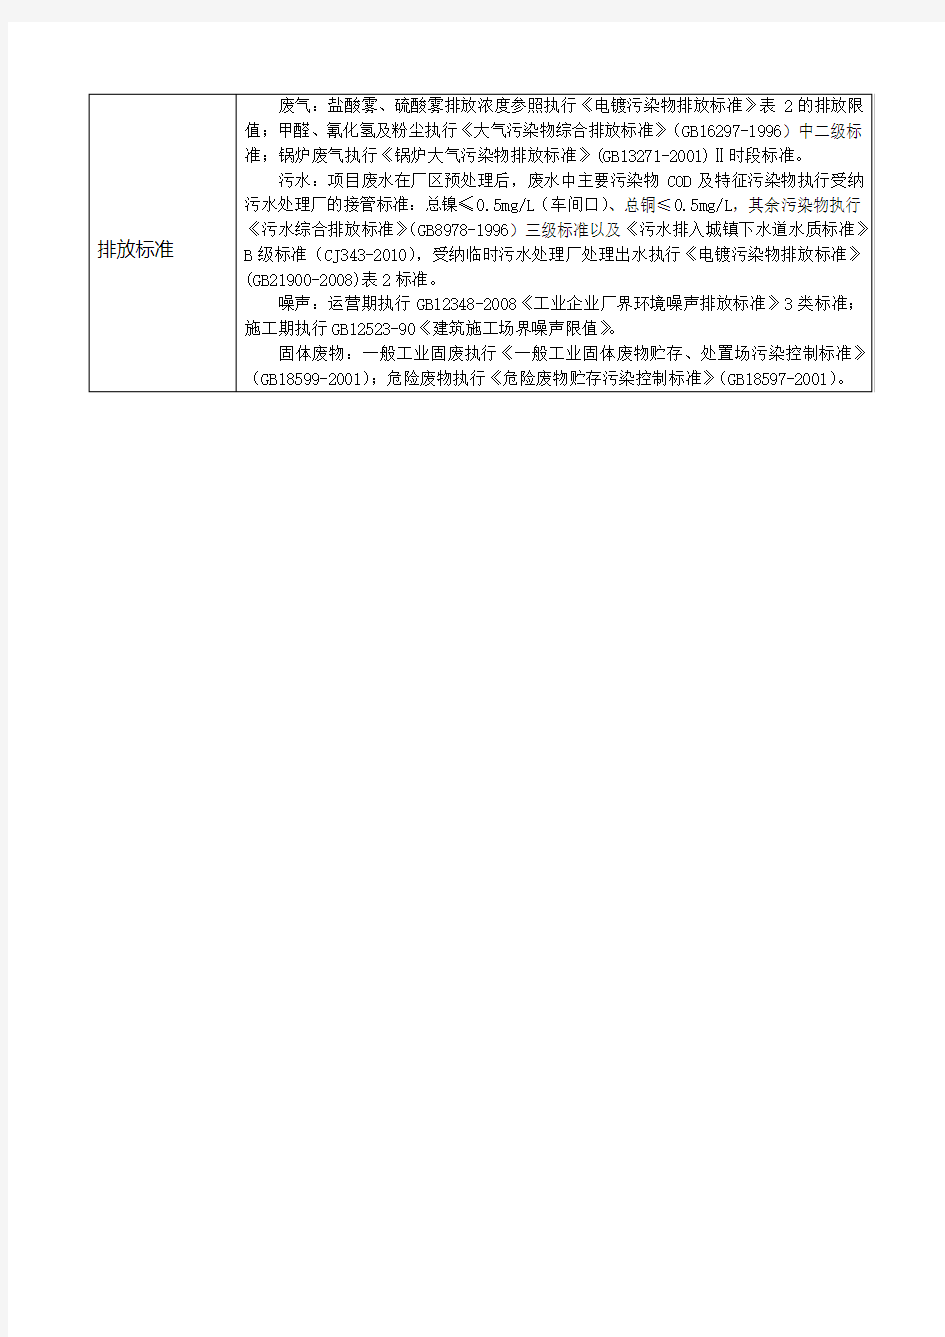 欣益兴科技(重庆)有限公司年产30万平方公尺多层IC封装载板环境影响评价报告书